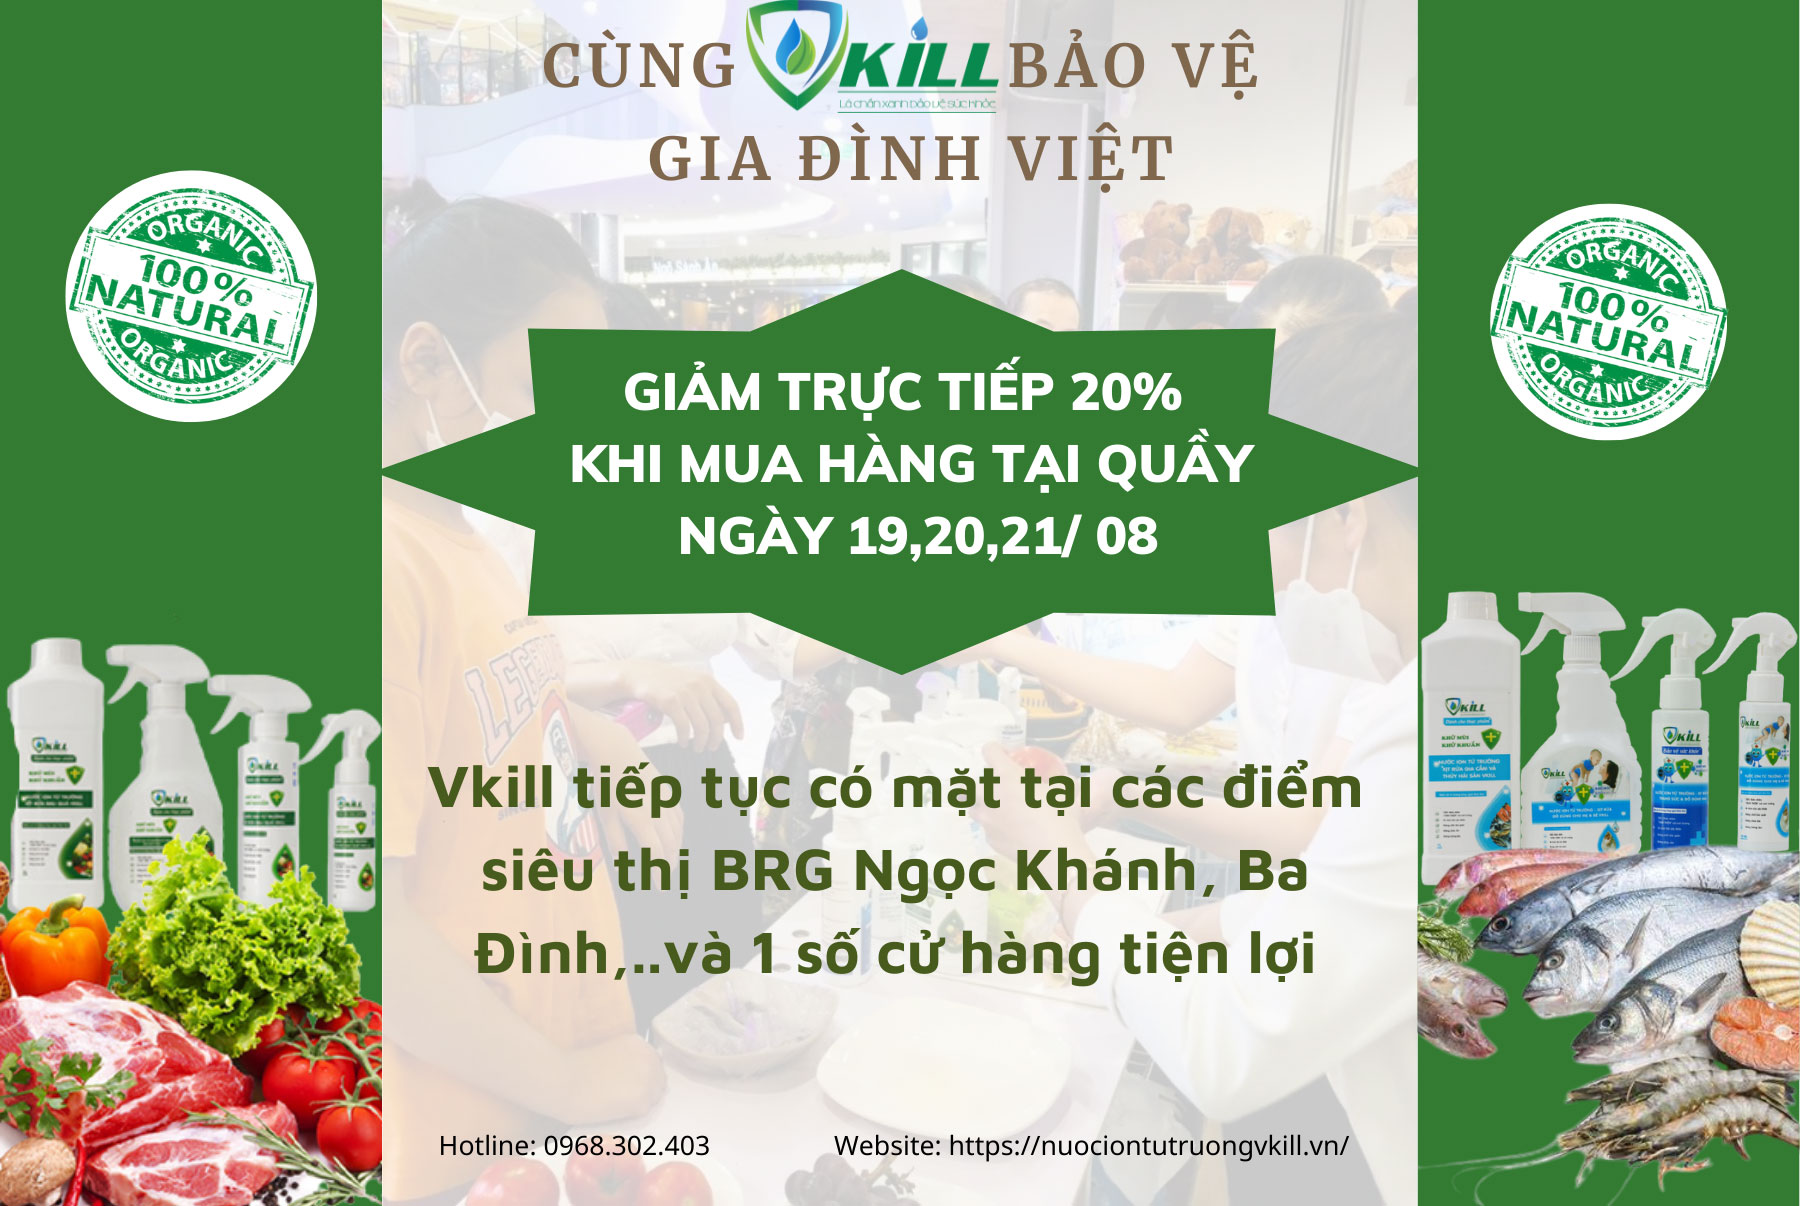 Vkill đã có mặt tại siêu thị BRG Ngọc Khánh, Ba Đình